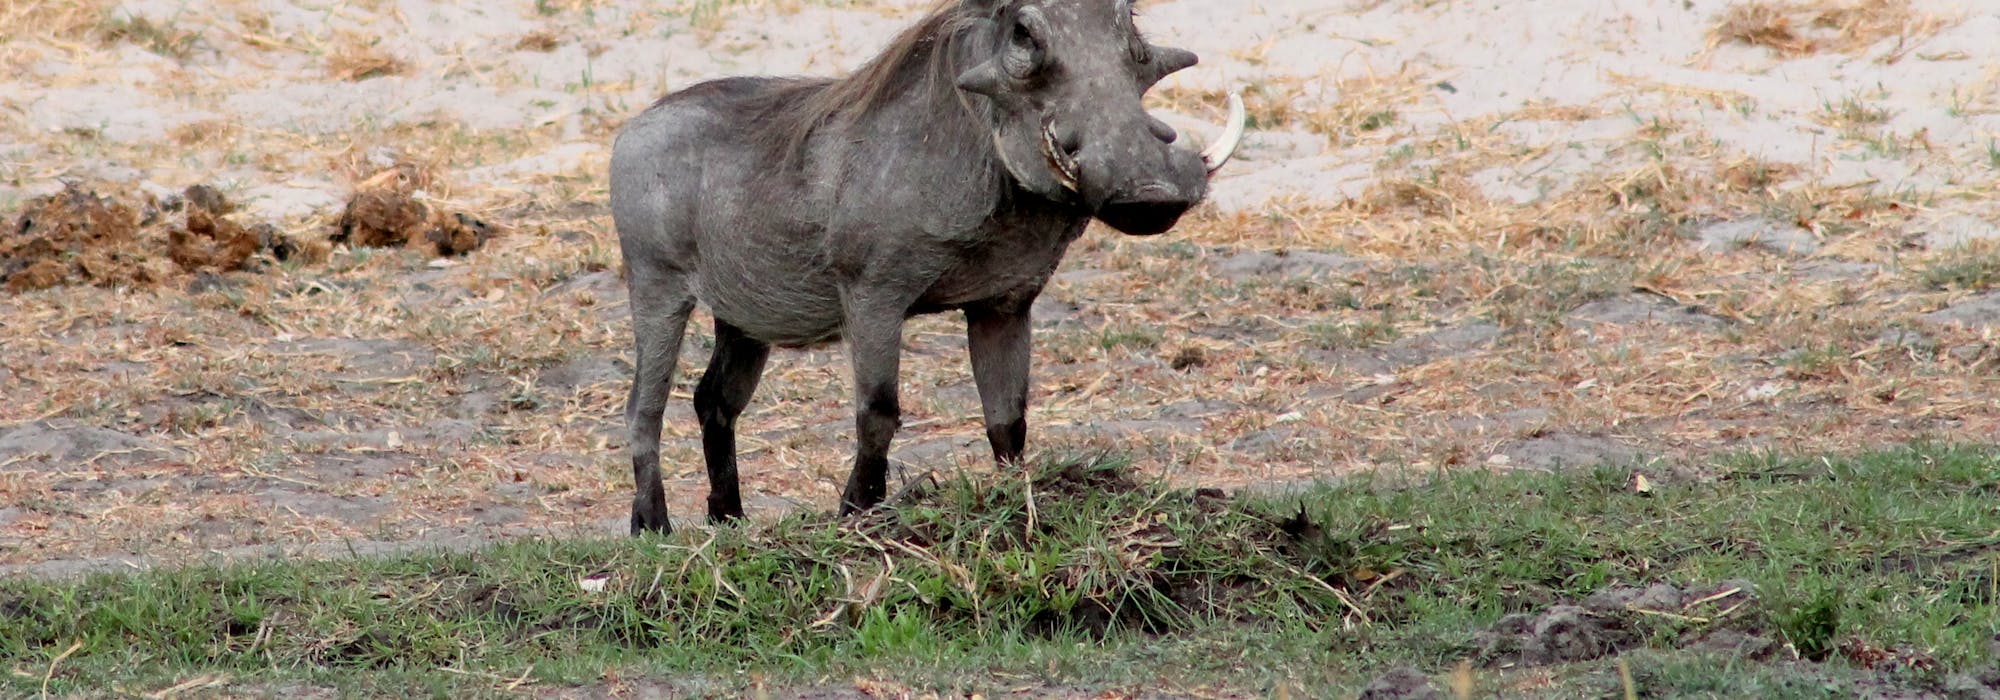 Warthog in the Okavango